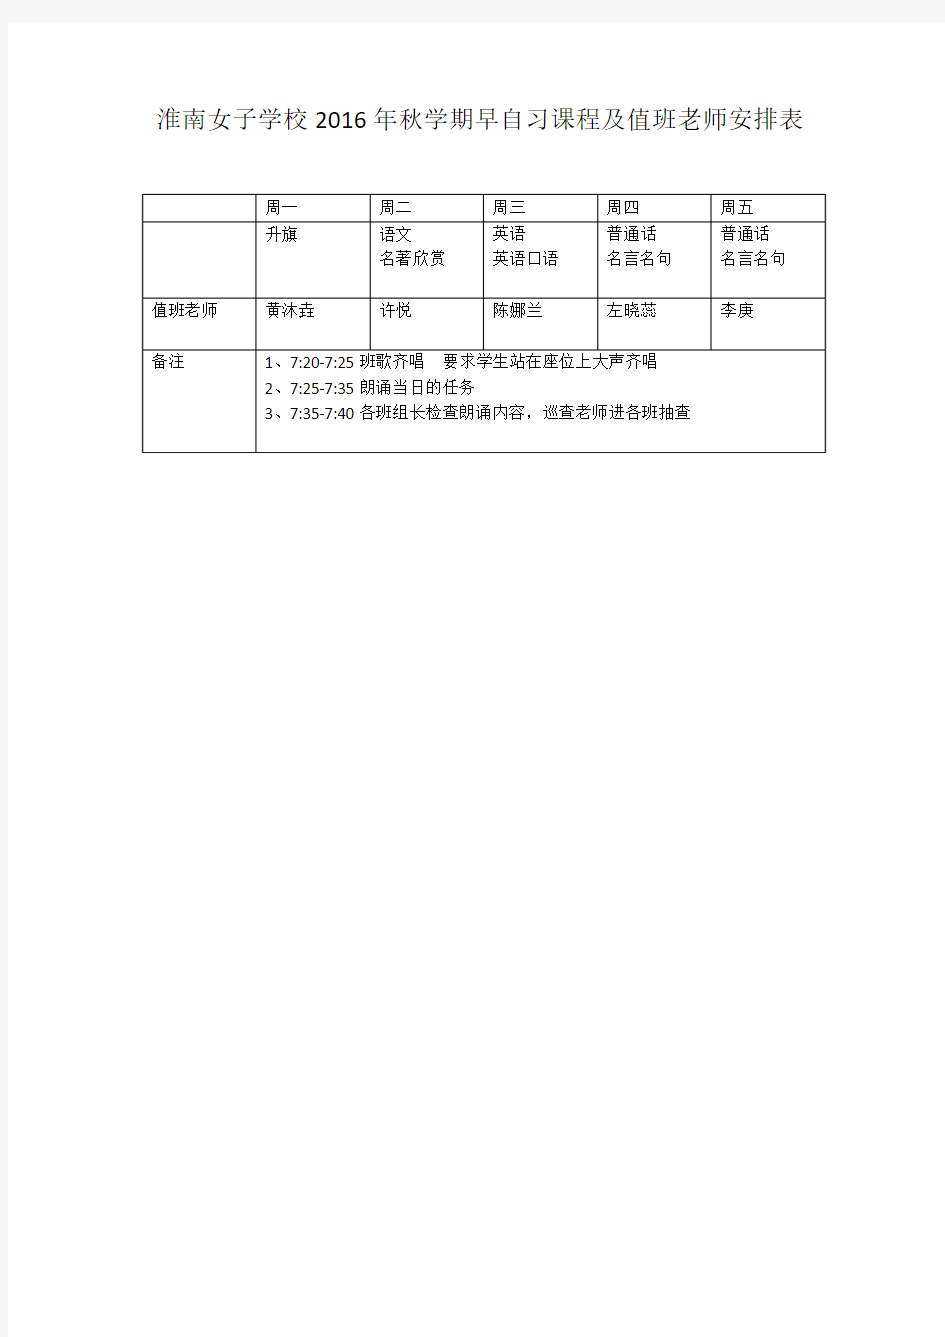 淮南女子学校2016年秋学期早自习课程及值班老师安排表